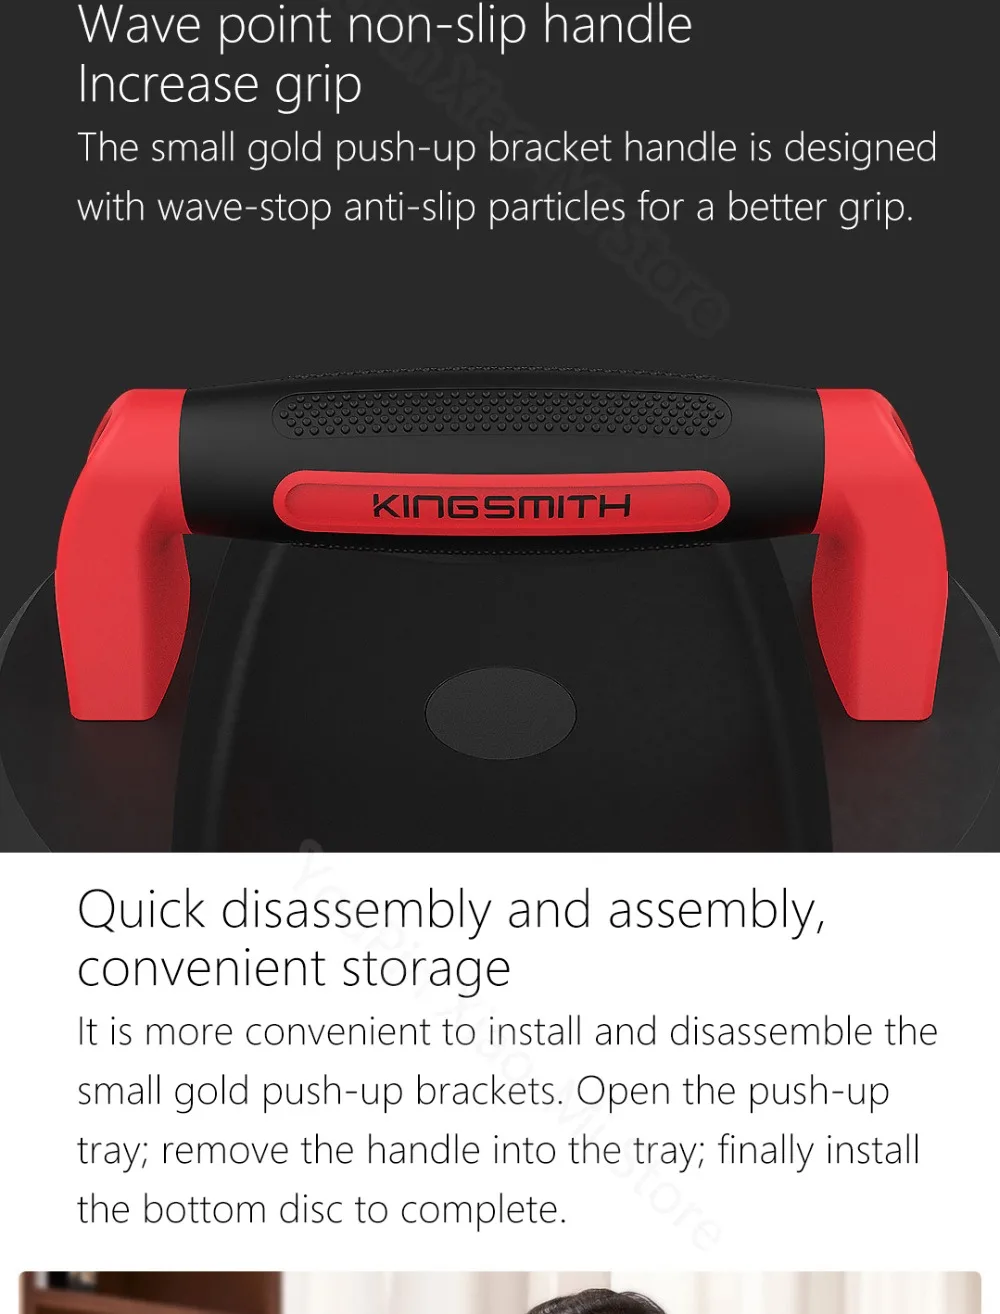 2 шт. Xiaomi Youpin Kingsmith пуш-ап Кронштейн Поддержка неустойчивая тренировка Съемная сборка ежедневных упражнений